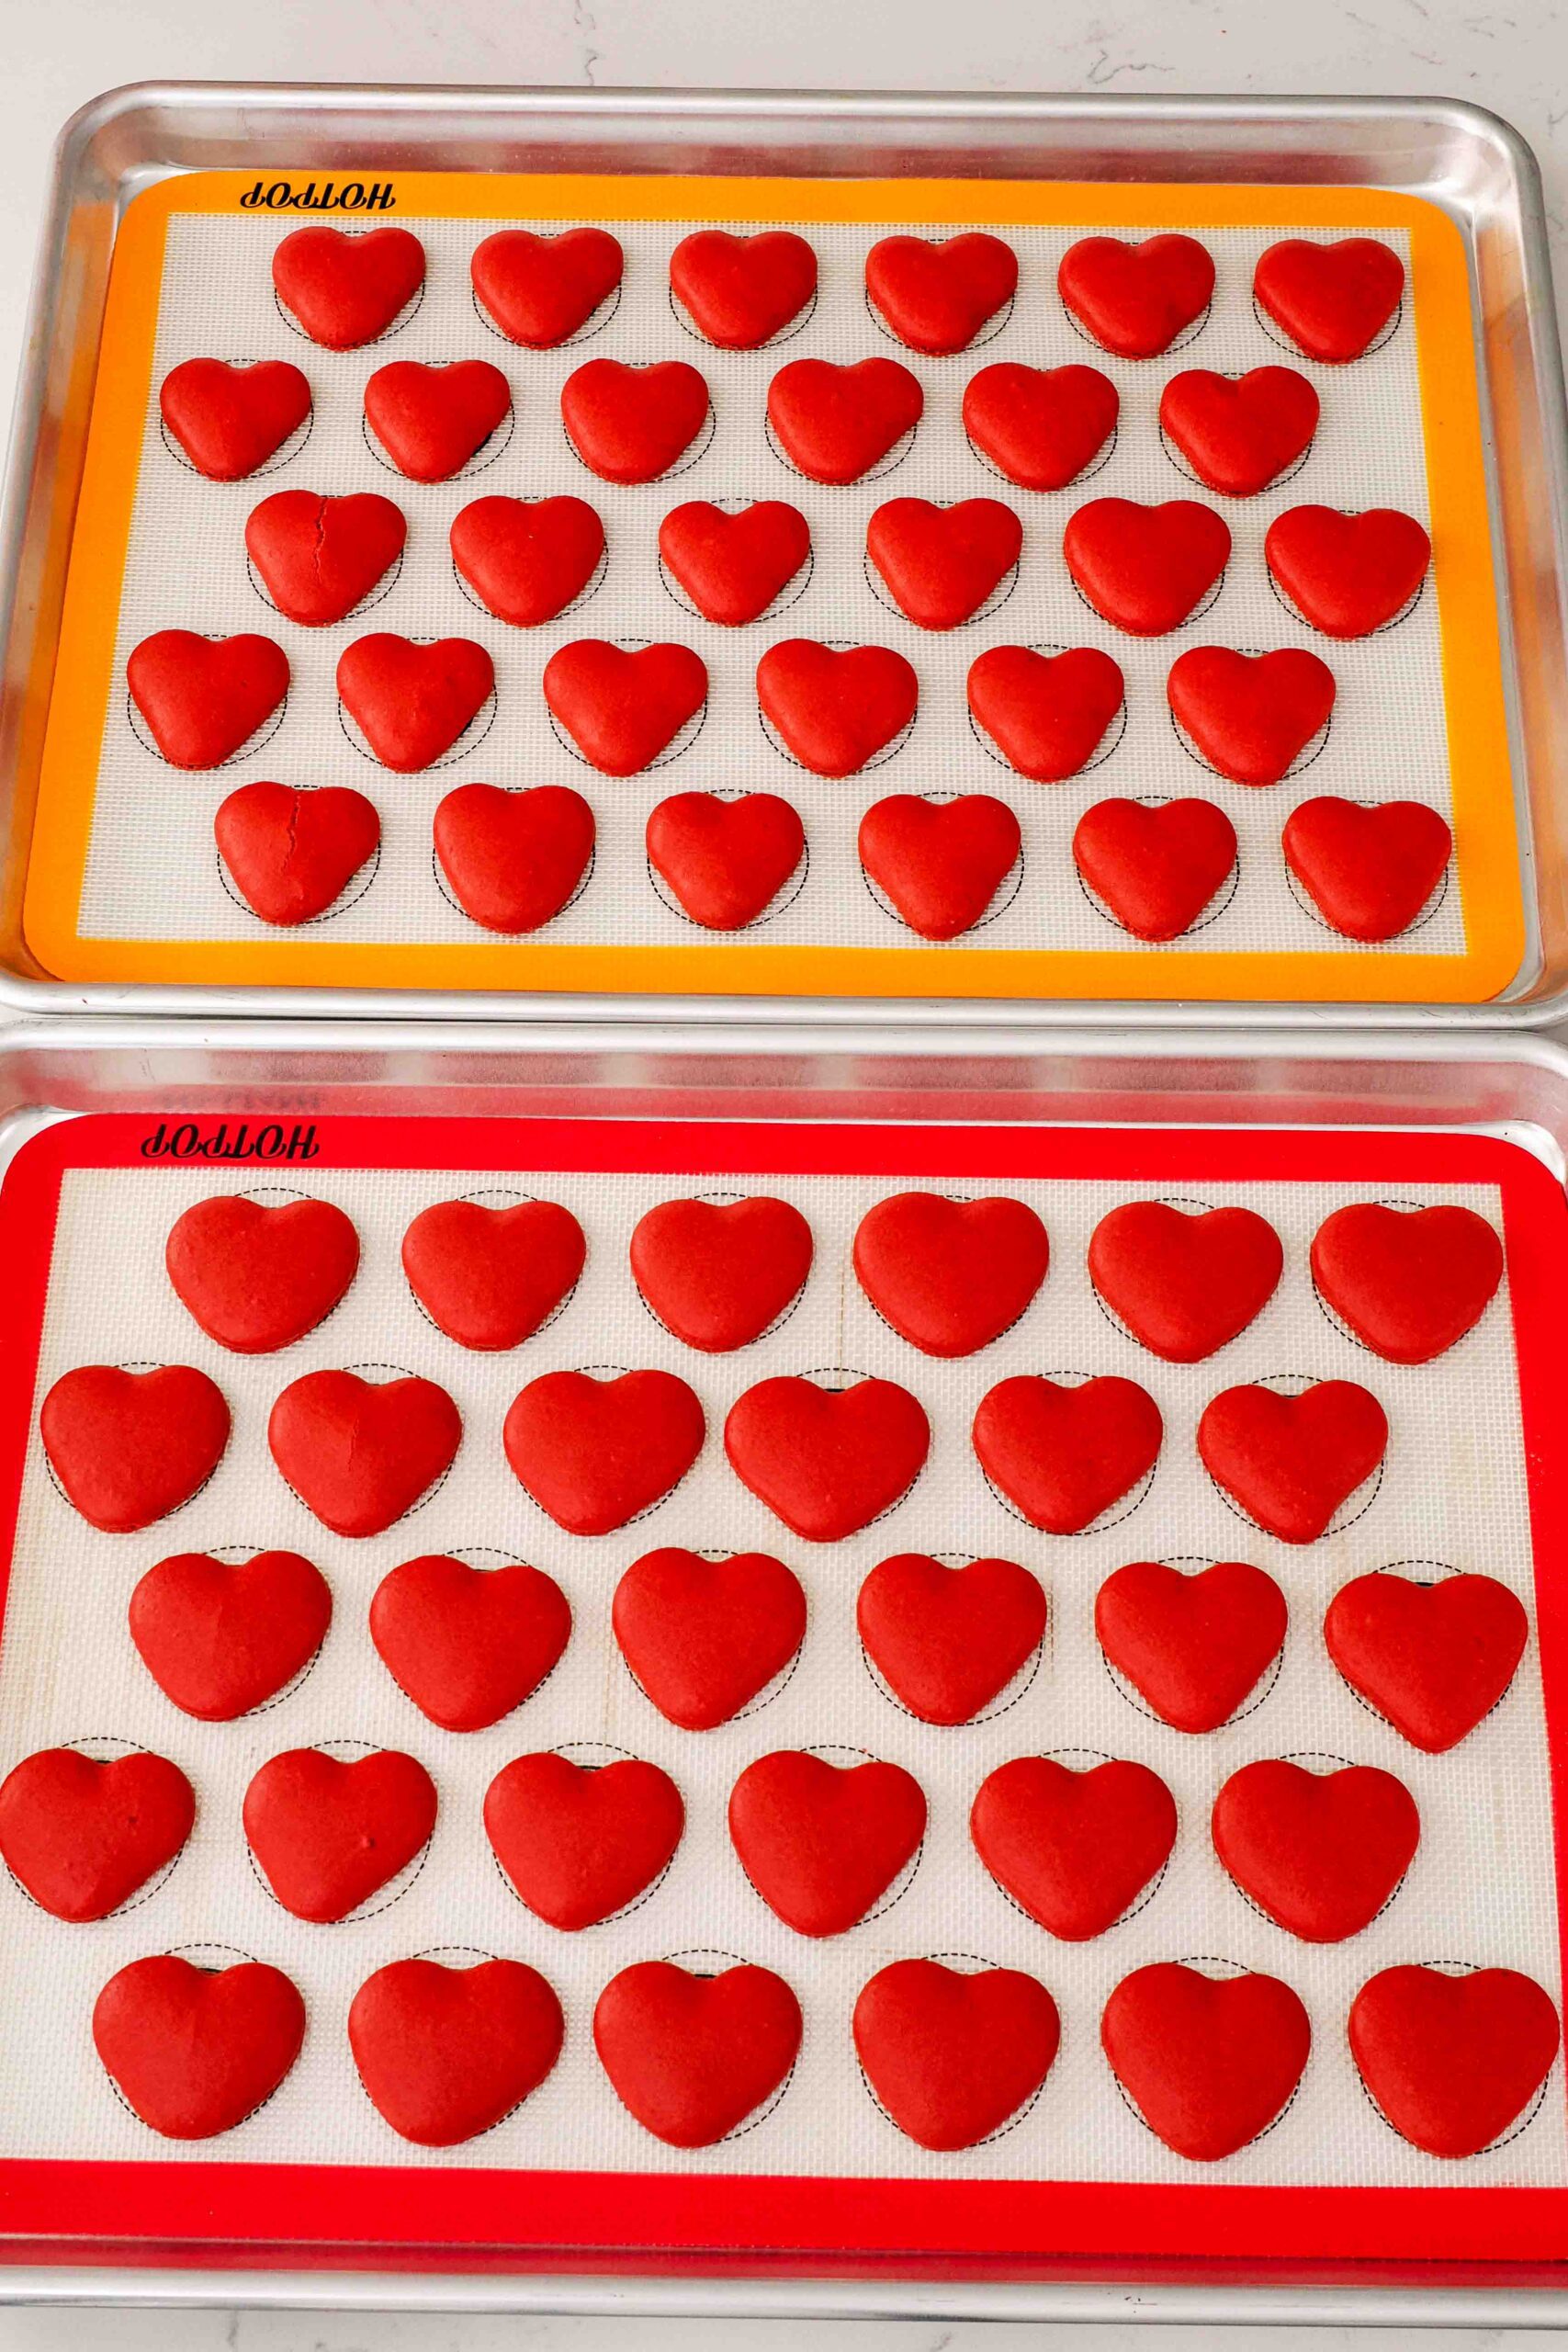 Freshly baked heart macarons on silicone macaron mats.